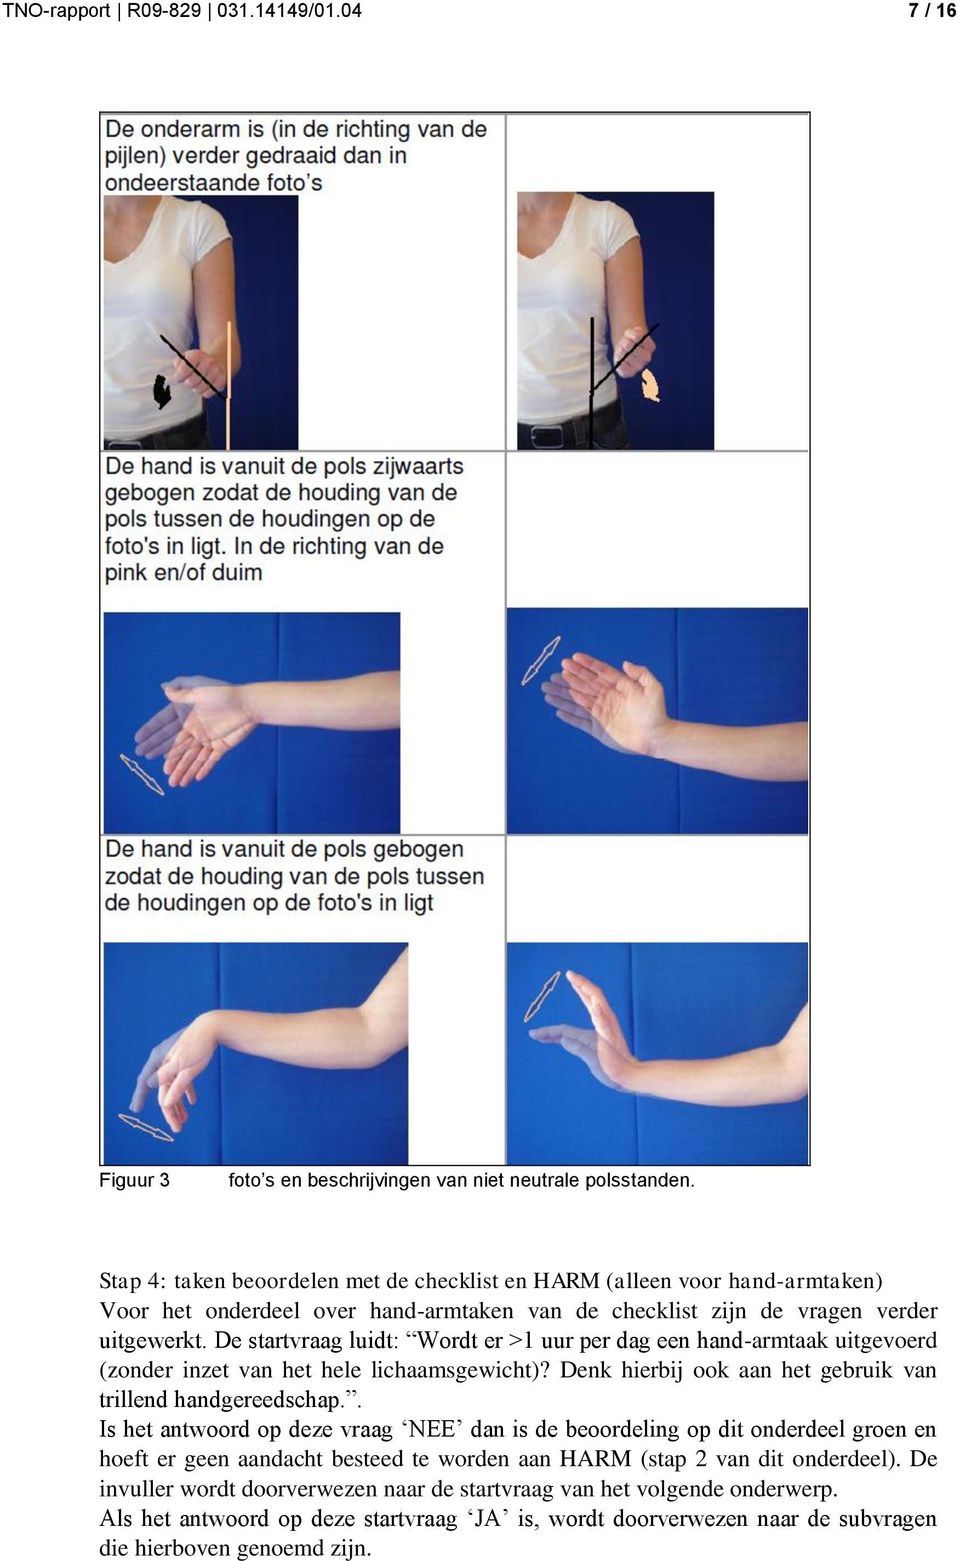 De startvraag luidt: Wordt er >1 uur per dag een hand-armtaak uitgevoerd (zonder inzet van het hele lichaamsgewicht)? Denk hierbij ook aan het gebruik van trillend handgereedschap.